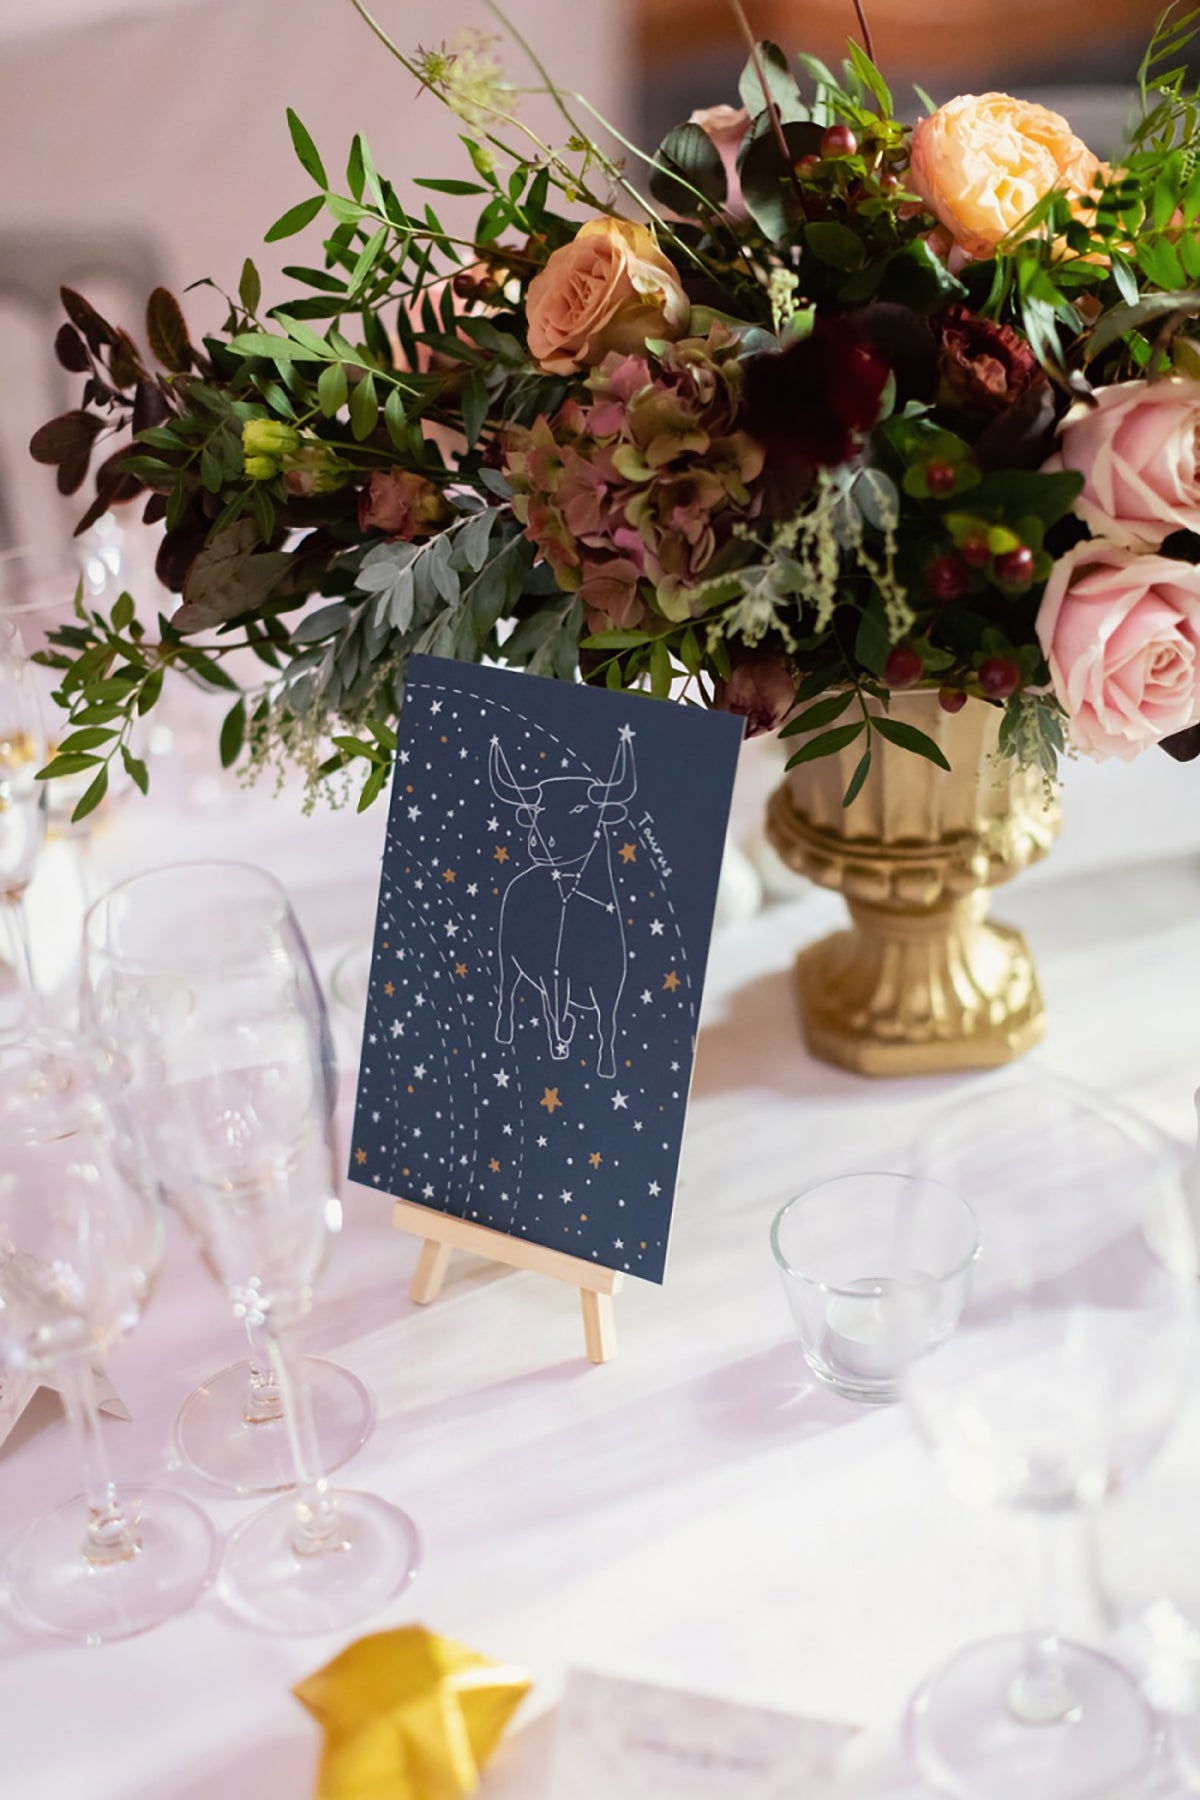 Bespoke celestial wedding themed table names